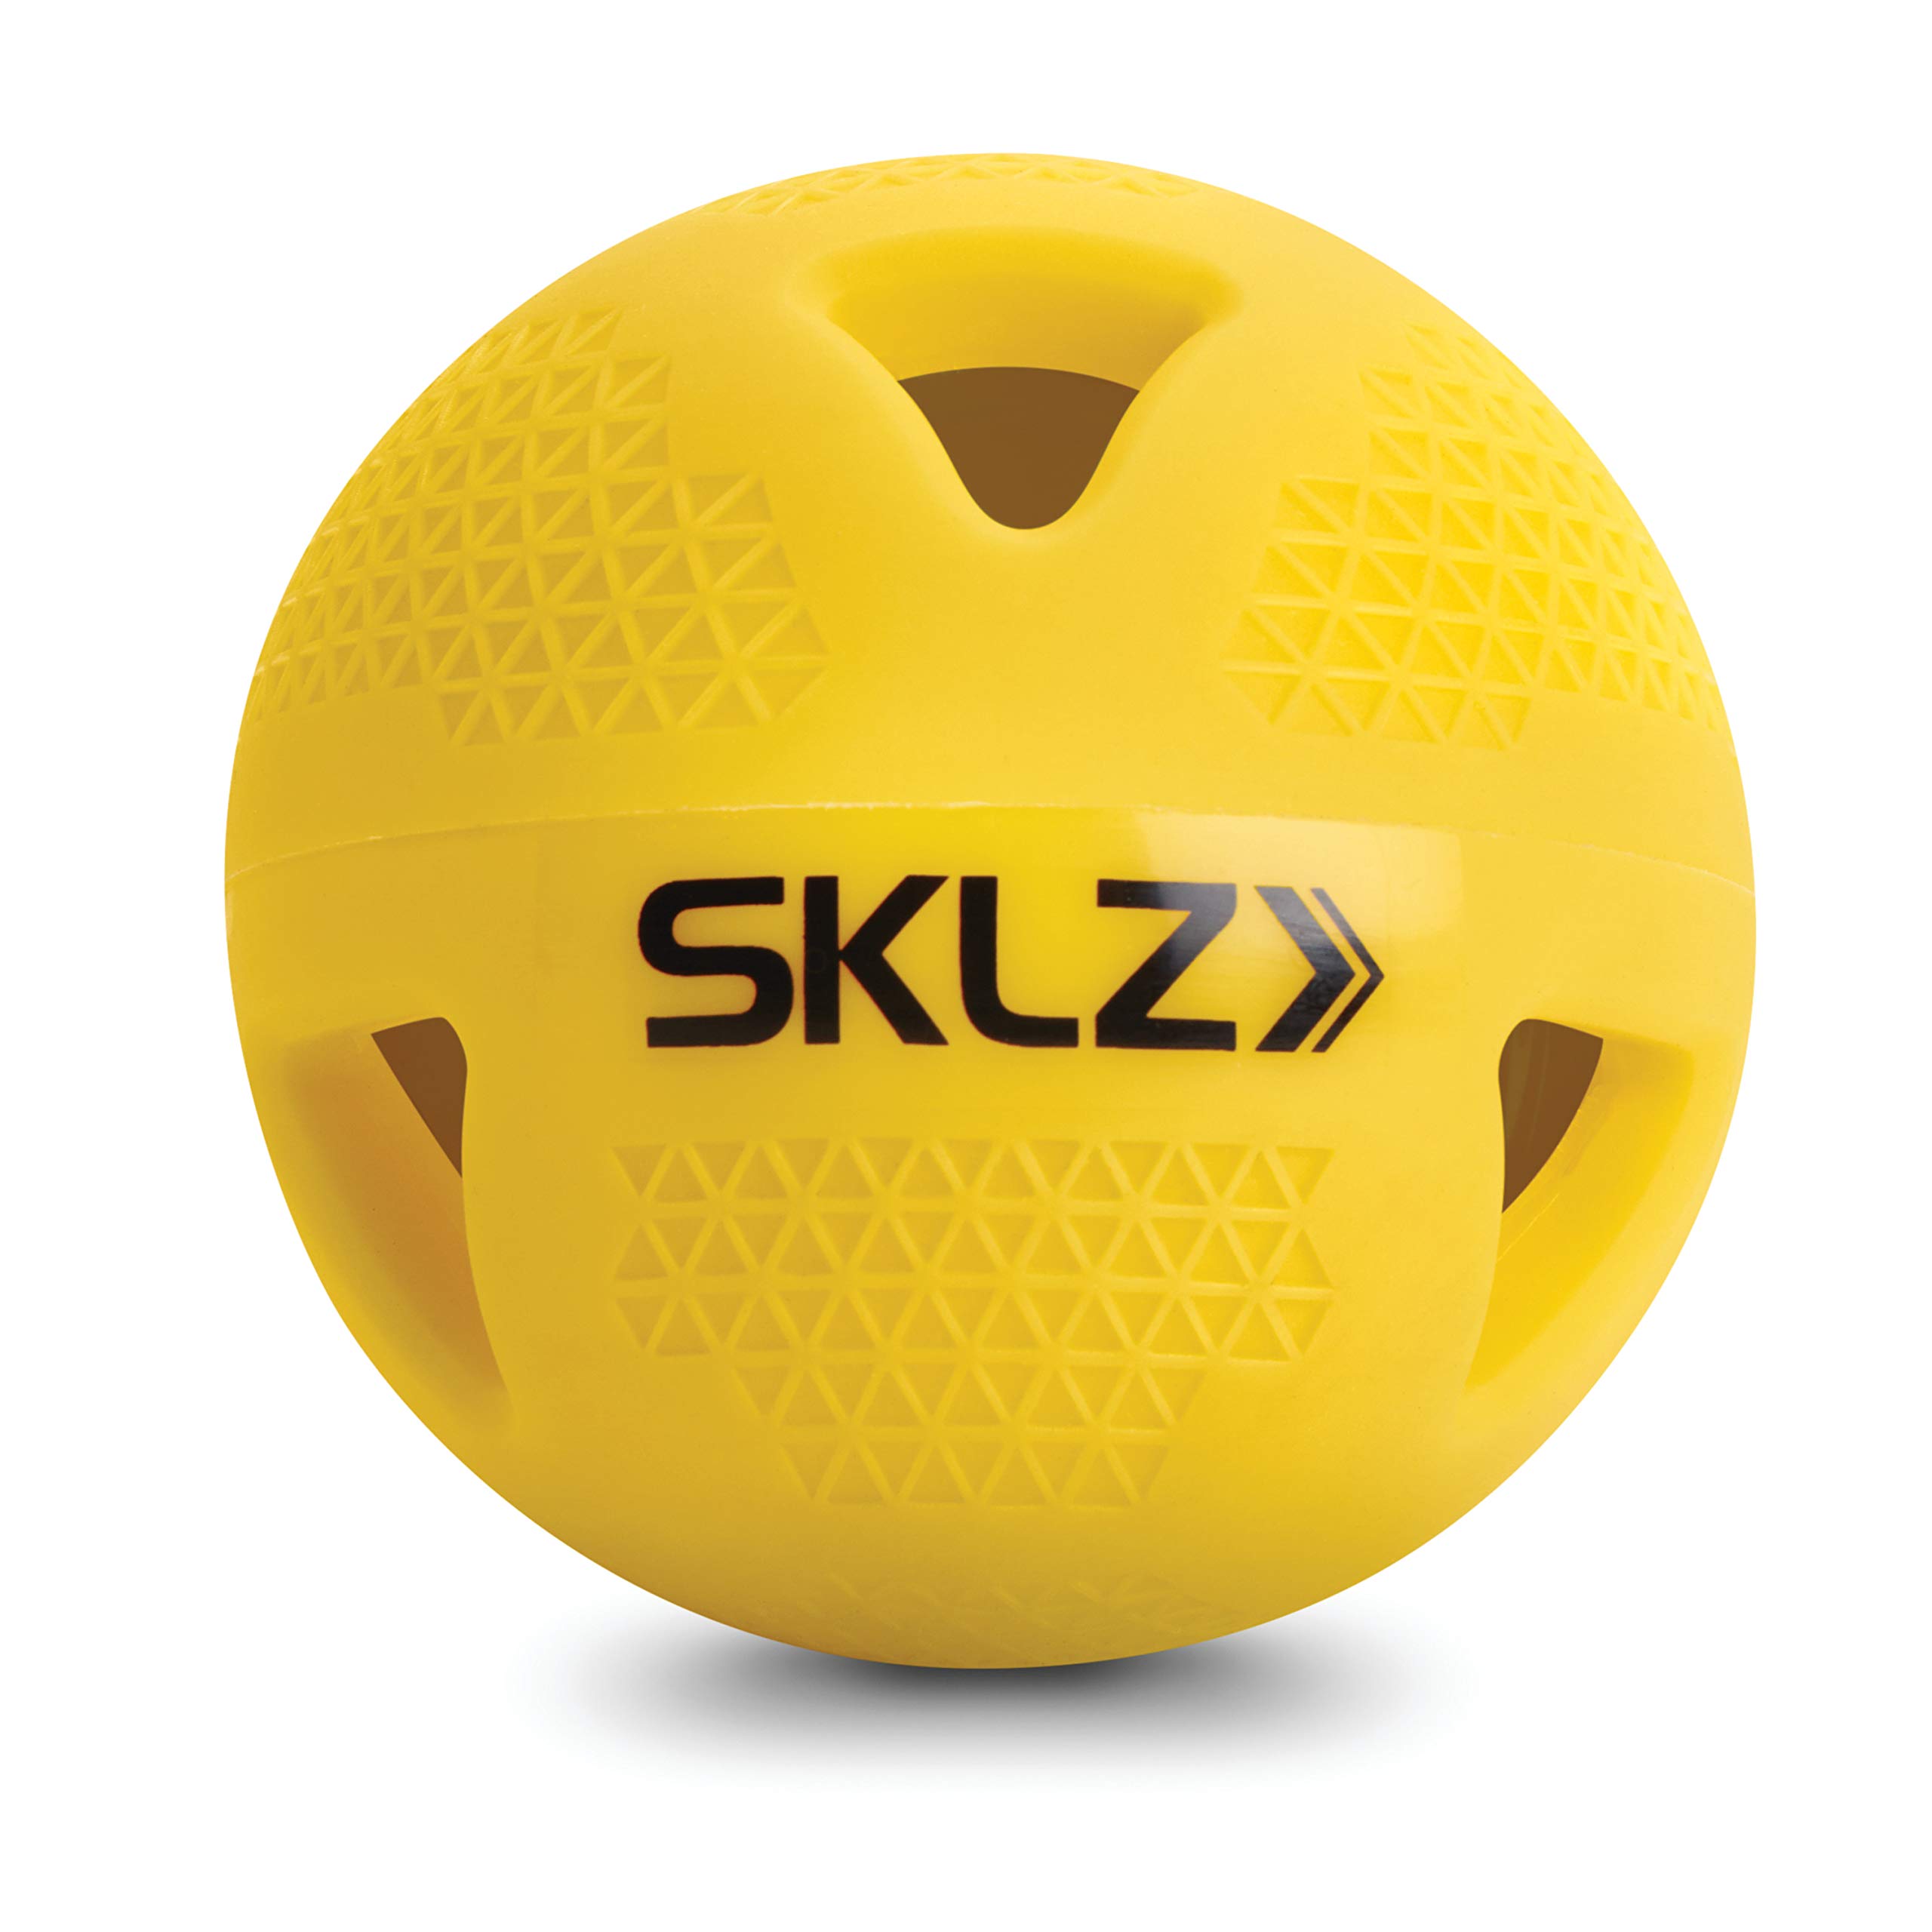 SKLZ Gewichteter Trainings-Baseball, offizielle Baseballgröße, limitierter Flug und schlagfest, gelb, 6 Stück, 6 Pack Impact